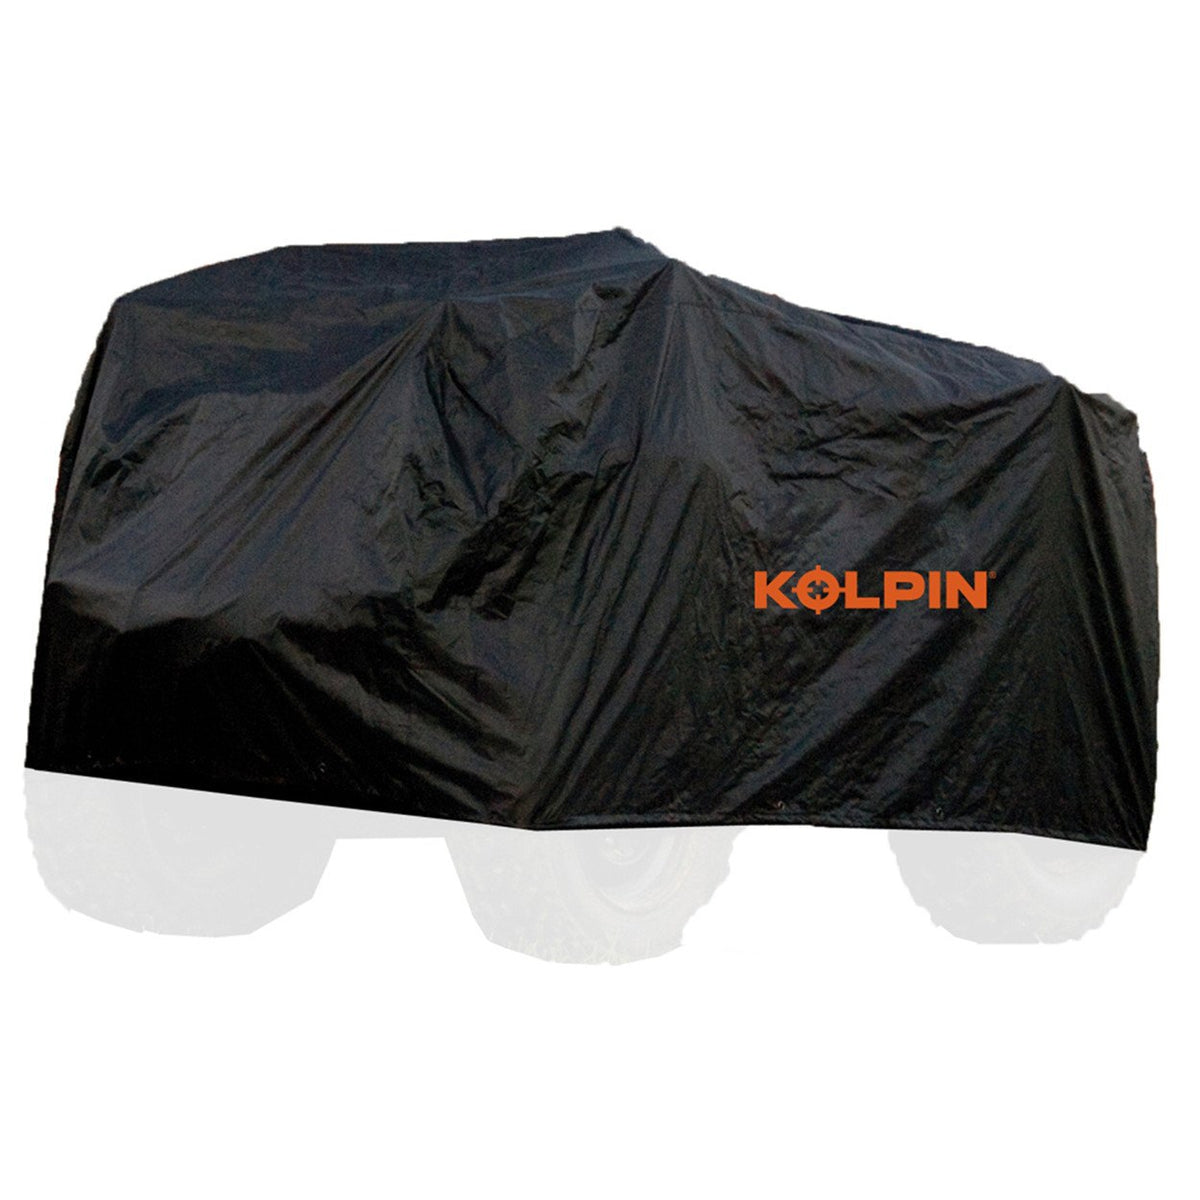 Kolpin ATV Storage Cover